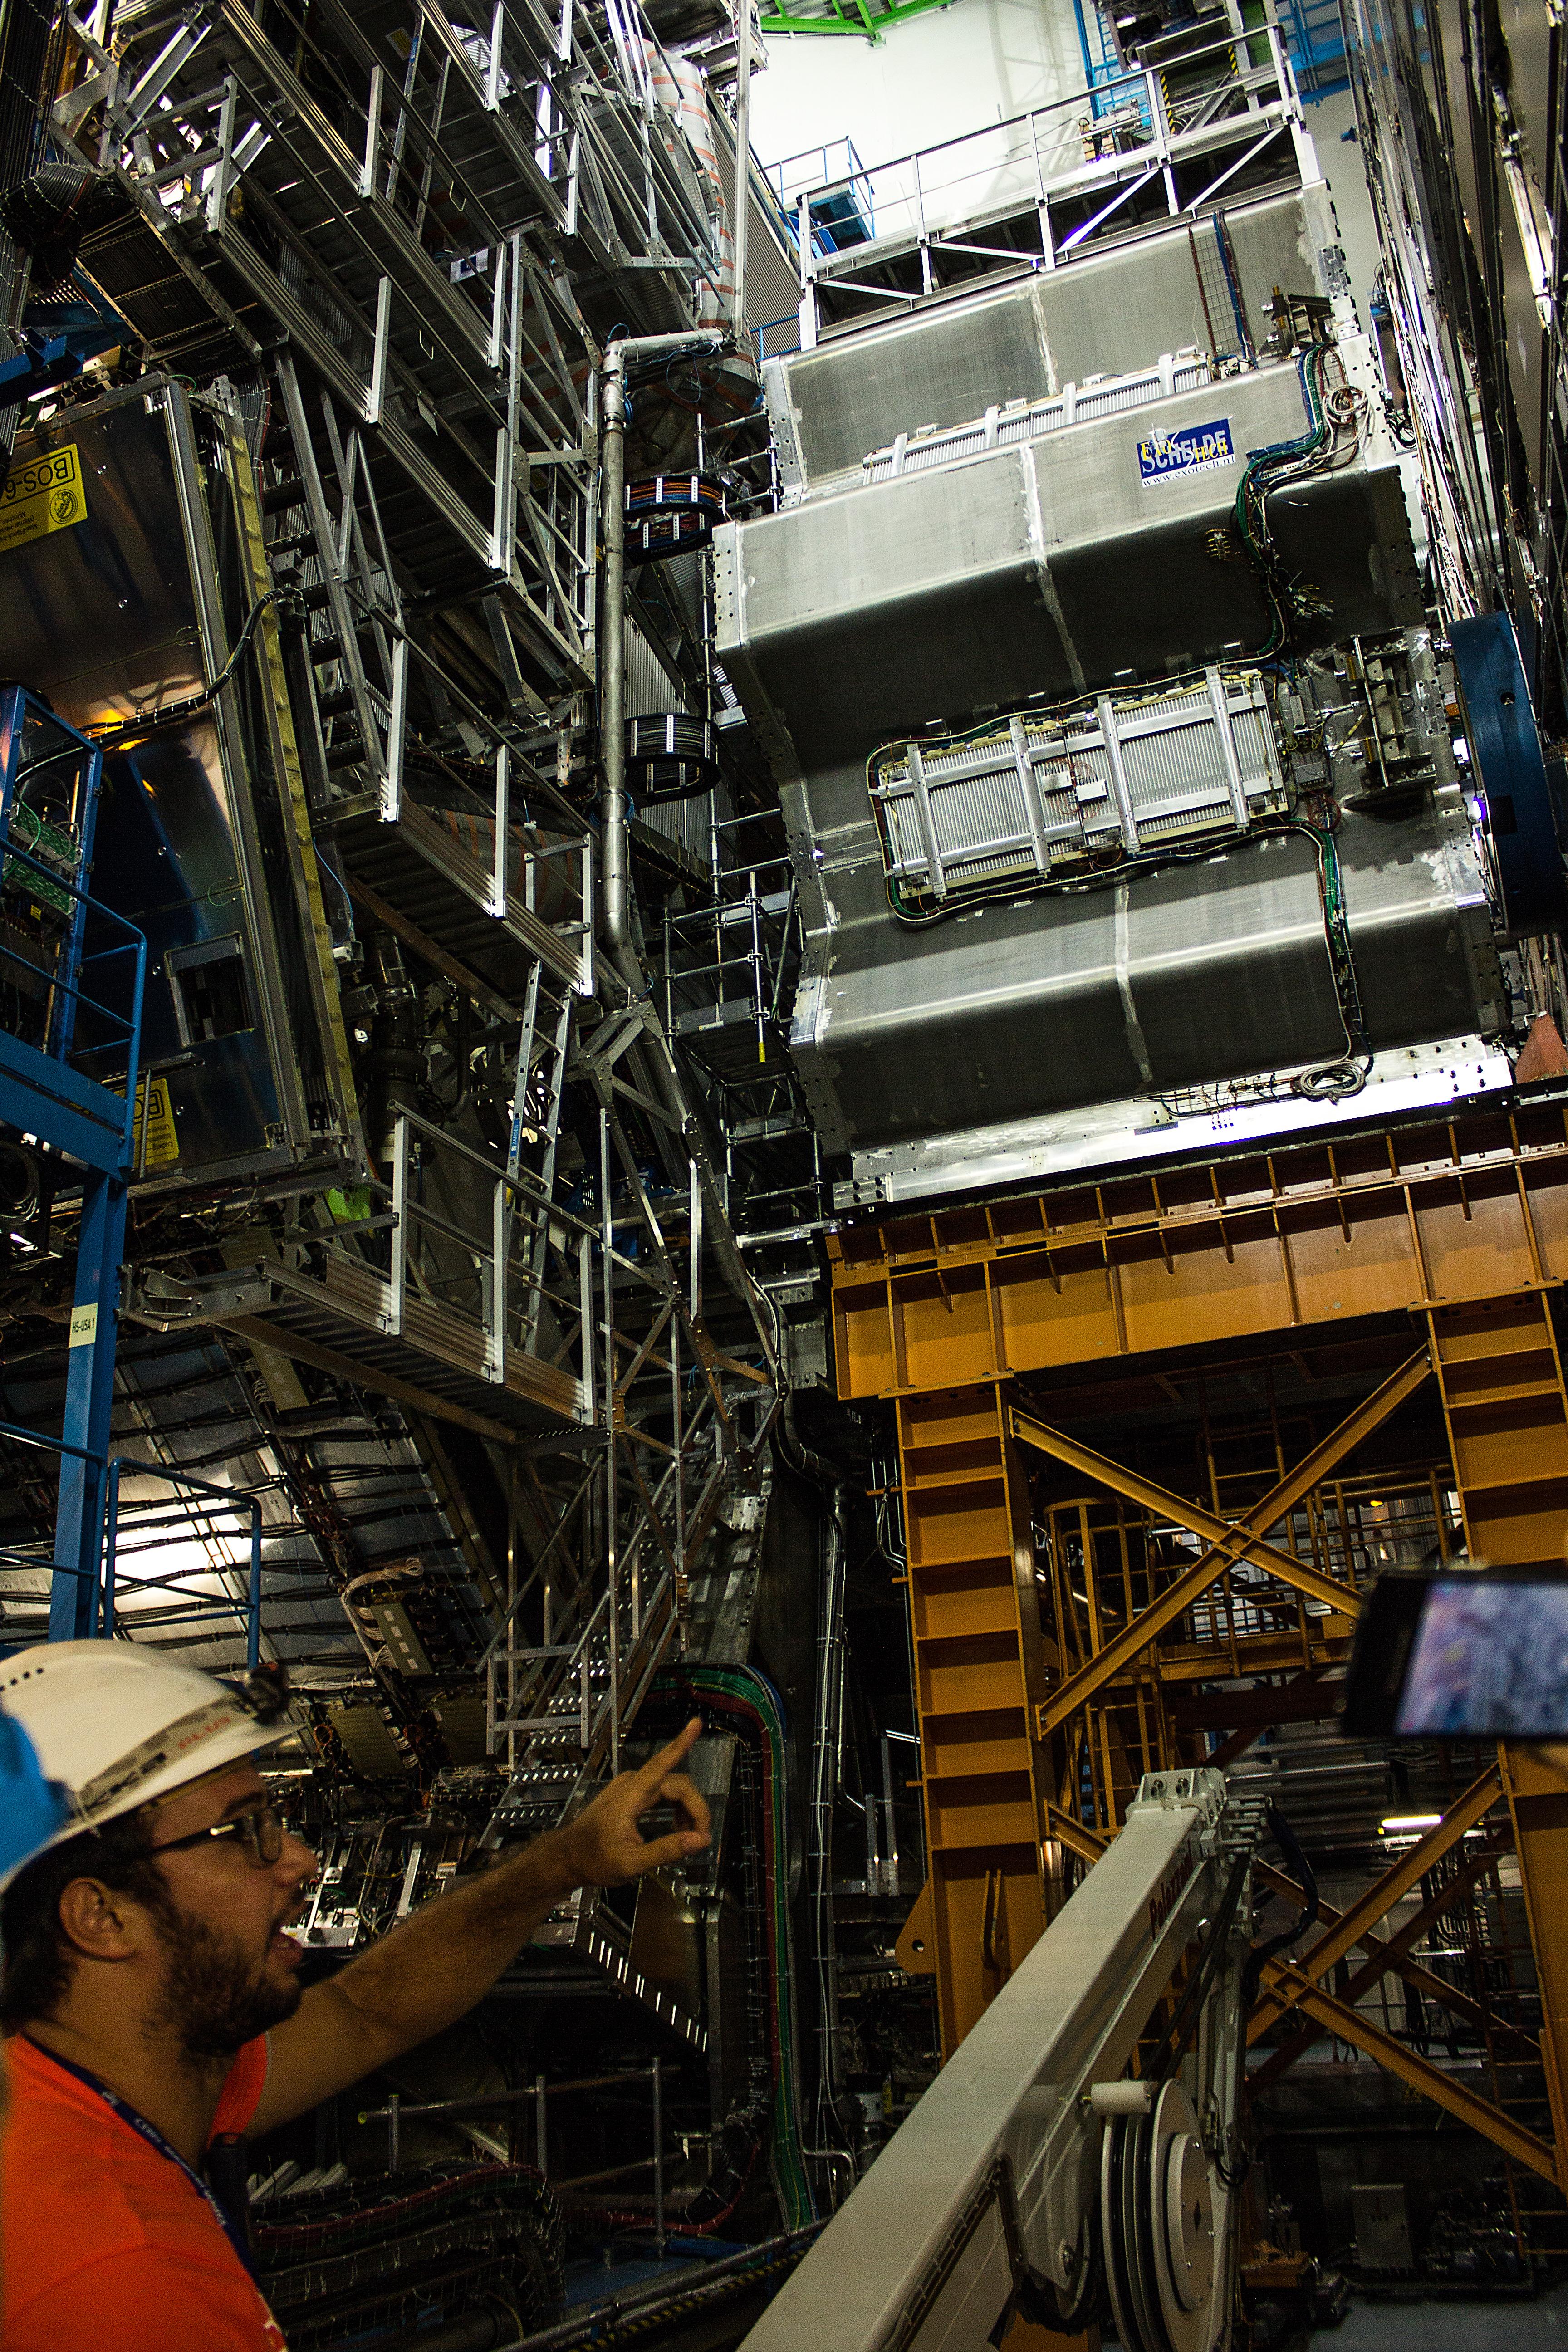 ATLAS er en av de imponerende store detektorene der protonstrålene føres sammen til en frontkollisjon. Den er 46 meter lang og 25 meter høy, og måler på det meste 1000 millioner partikkelkollisjoner hvert eneste sekund. Foto: Varg Aamo, Hardware.no